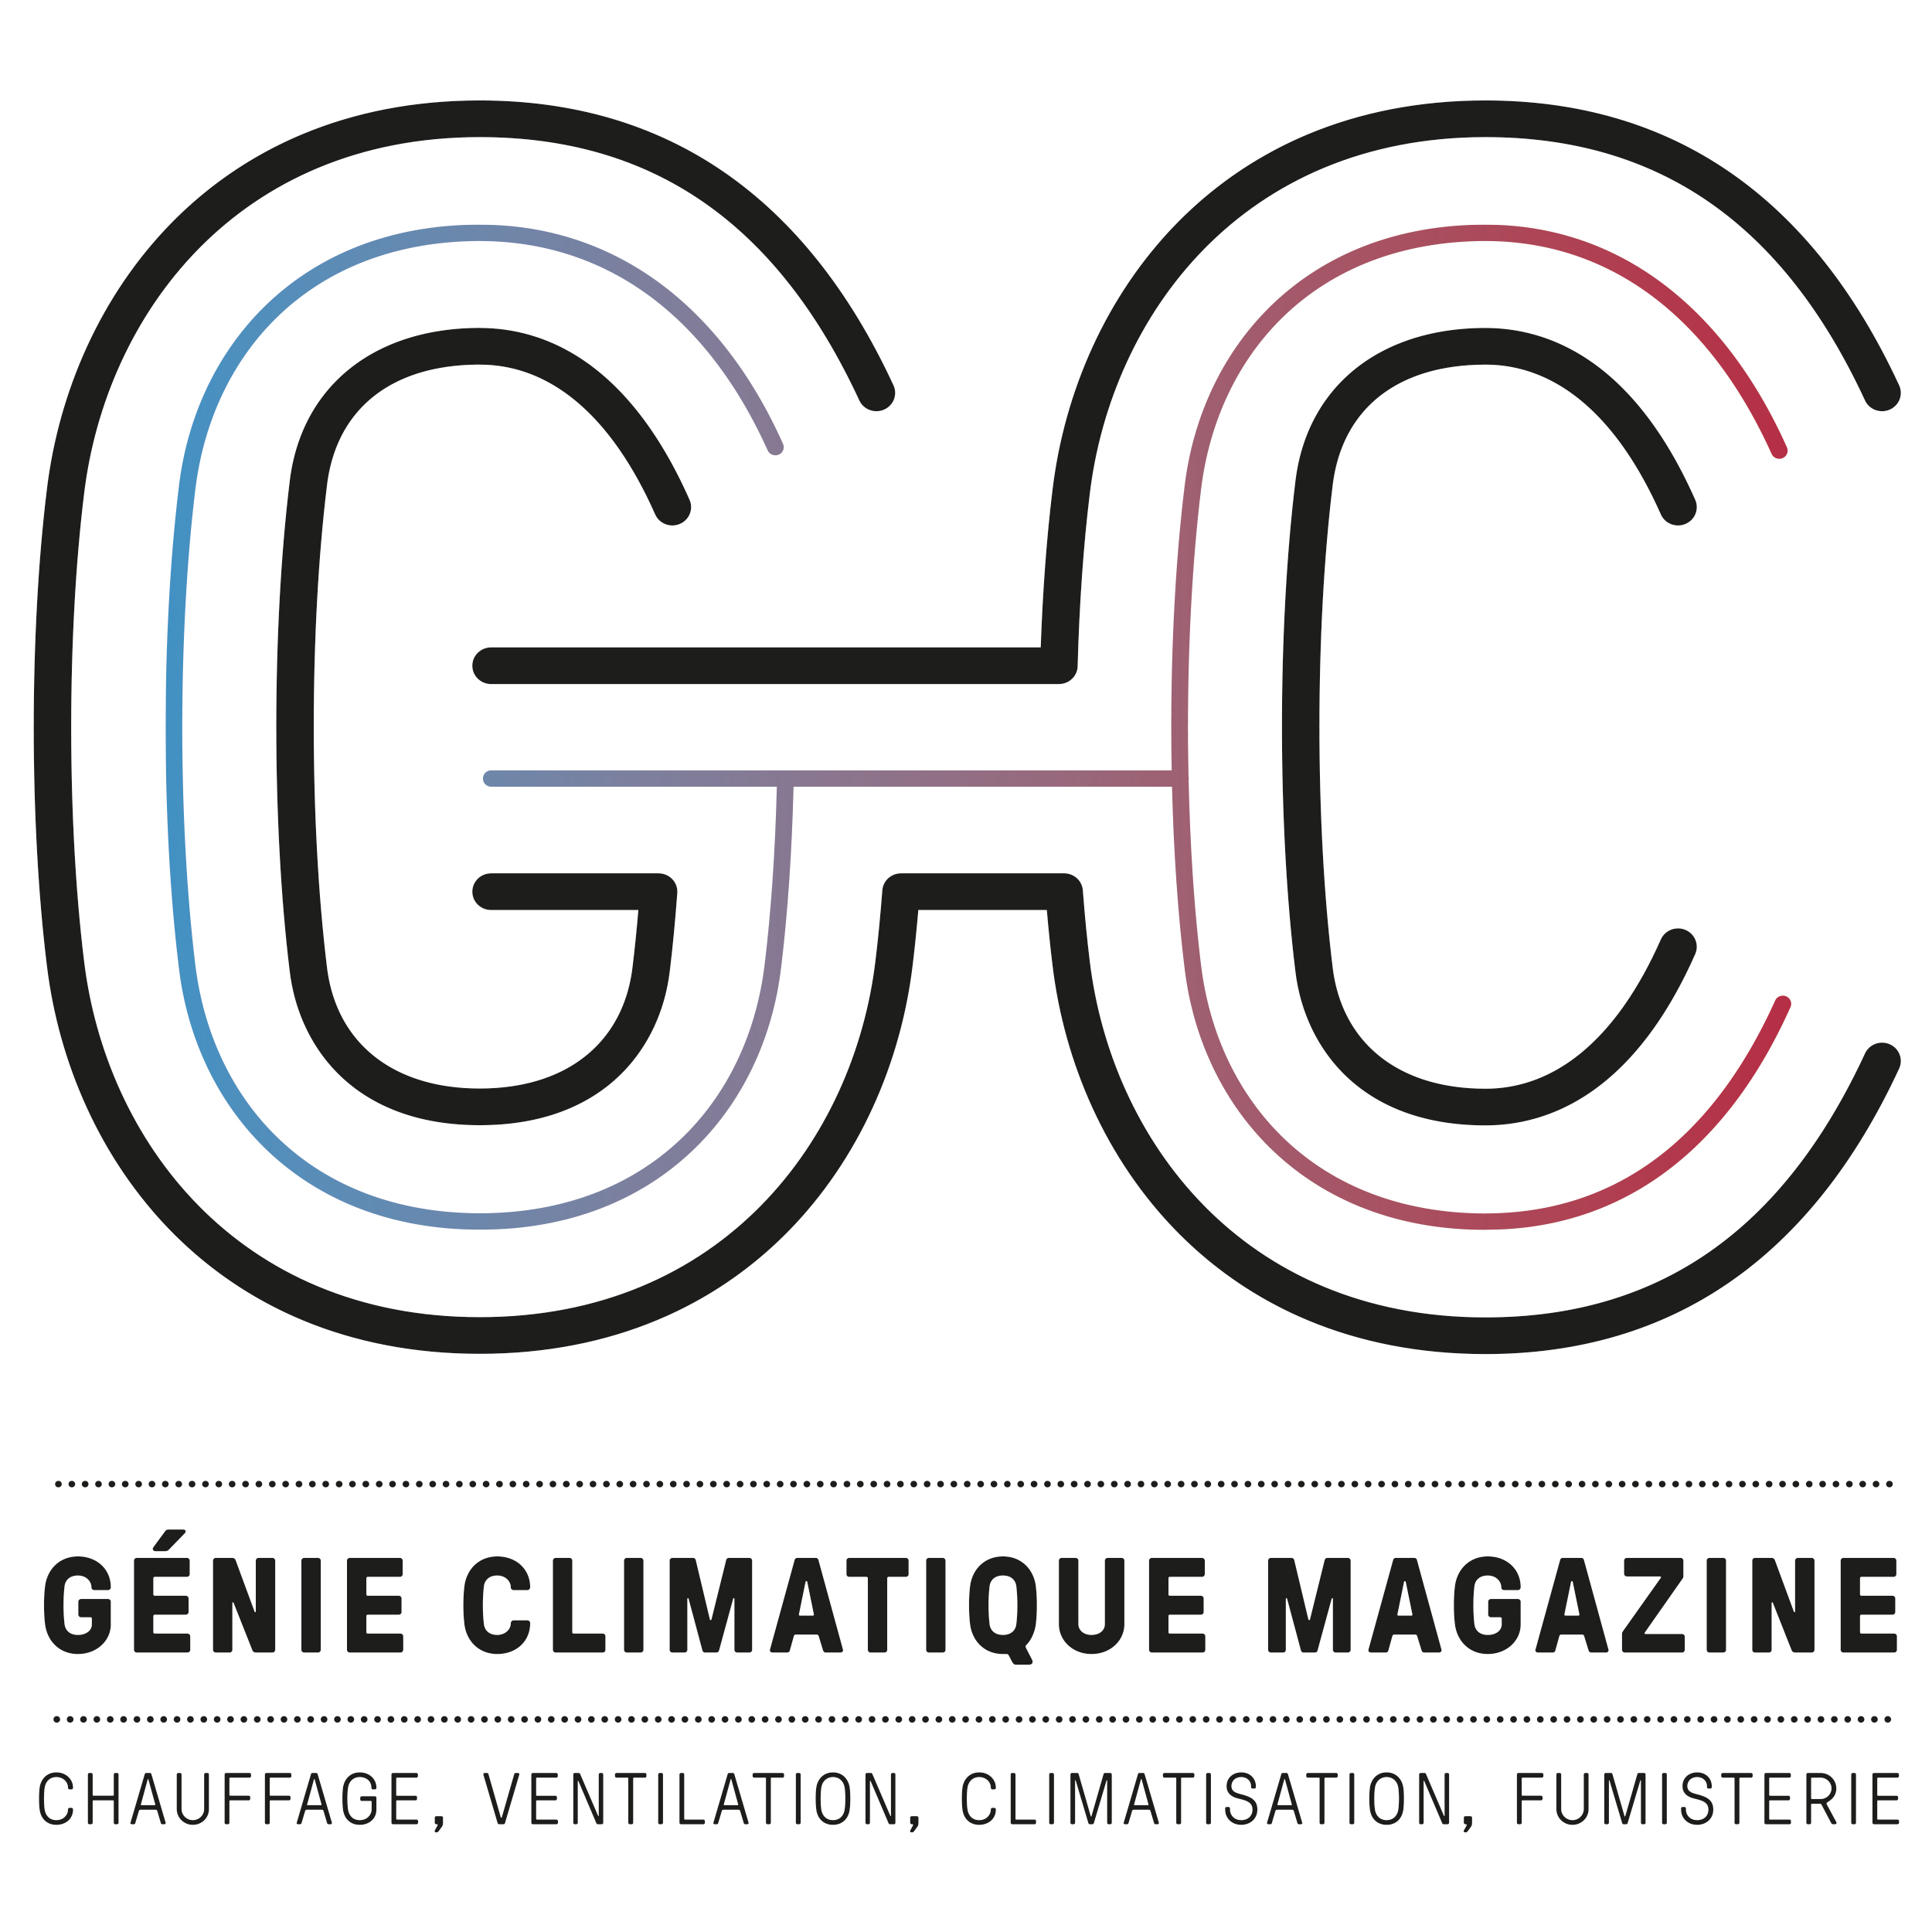 Genie Climatique Magazine - Logo vertical